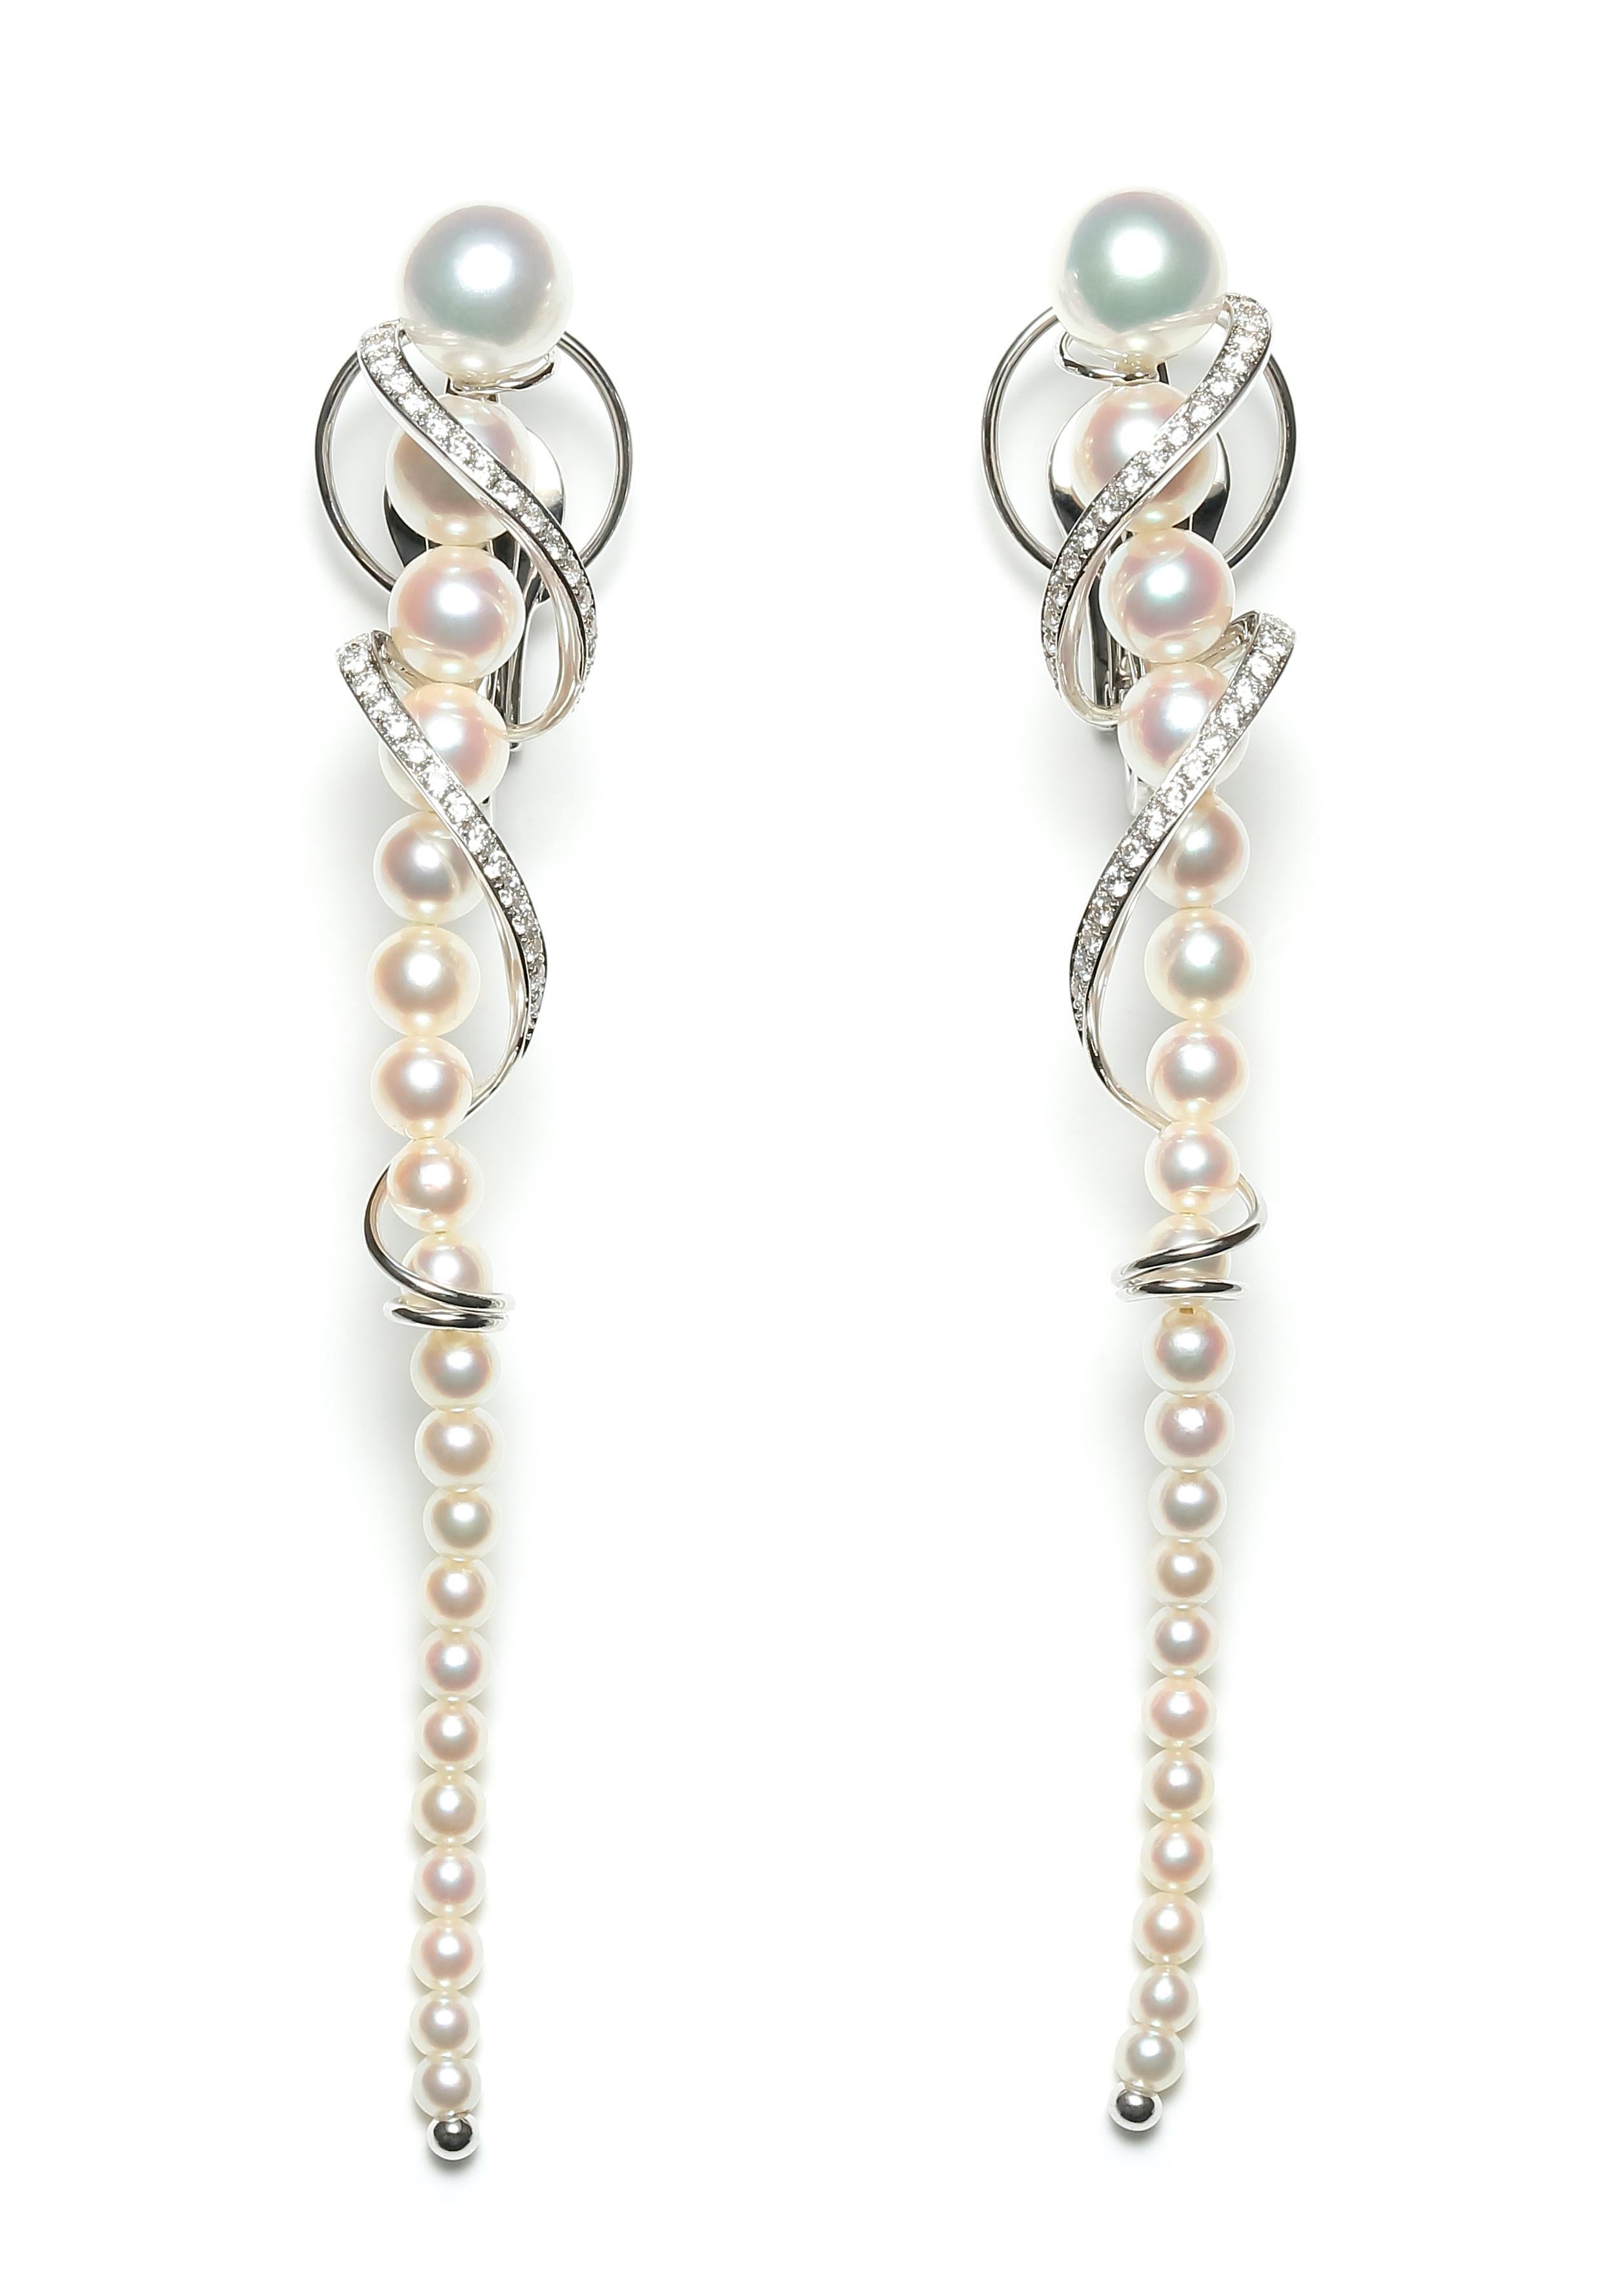 Akoya Perle & Diamant Muschel Ohrringe

Jede Perle wird von Hand gepflückt und aufeinander abgestimmt, um eine perfekte Harmonie in Farbe und Größe zu gewährleisten und lebendige Schmuckstücke zu schaffen. Diese witzige und kokette Kreation besteht